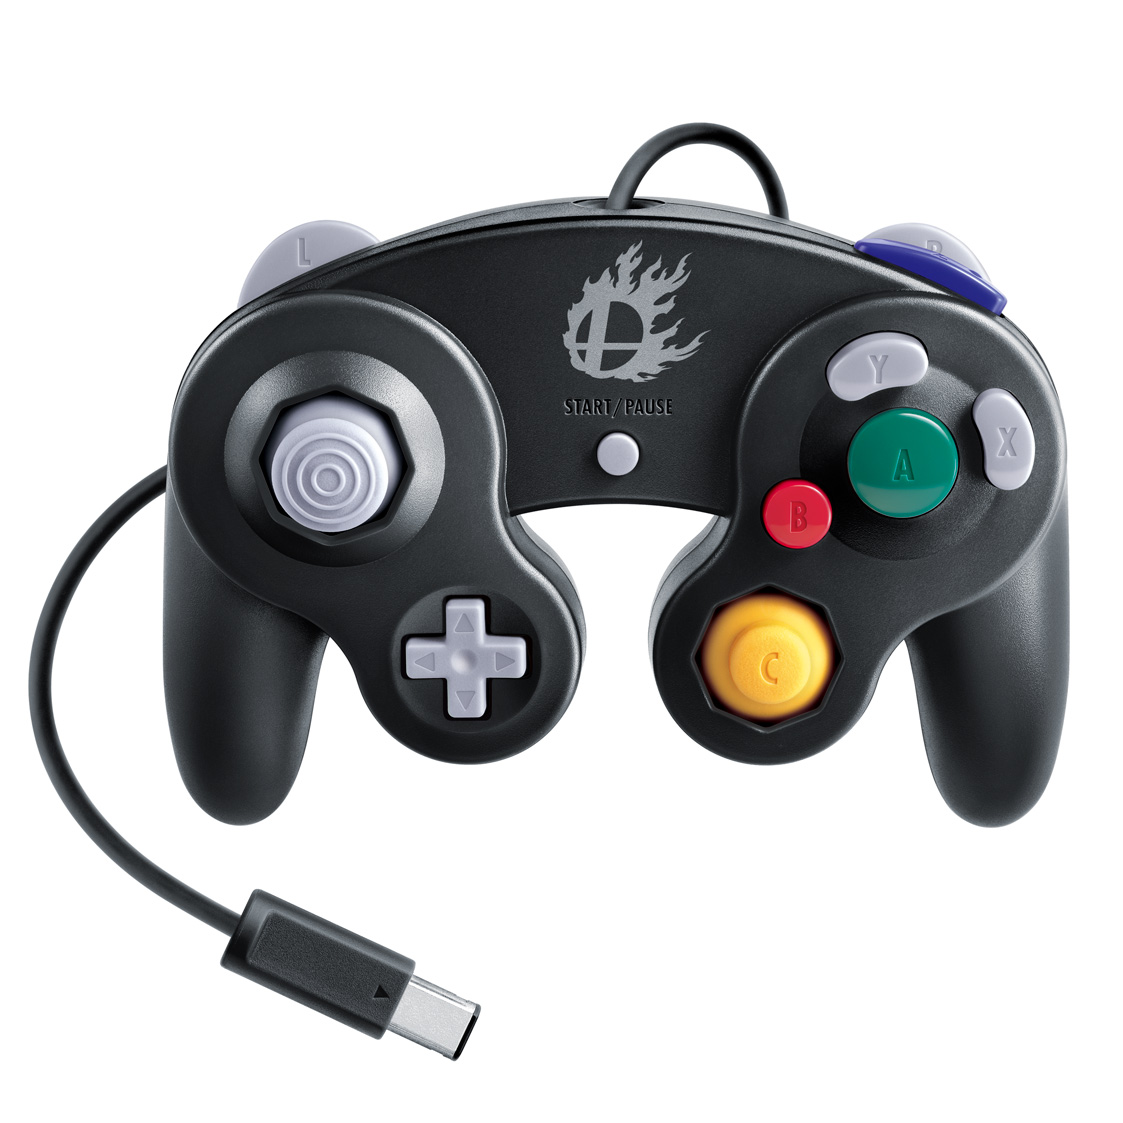 GameCube Controller - Super Smash Bros. Edition Wii U